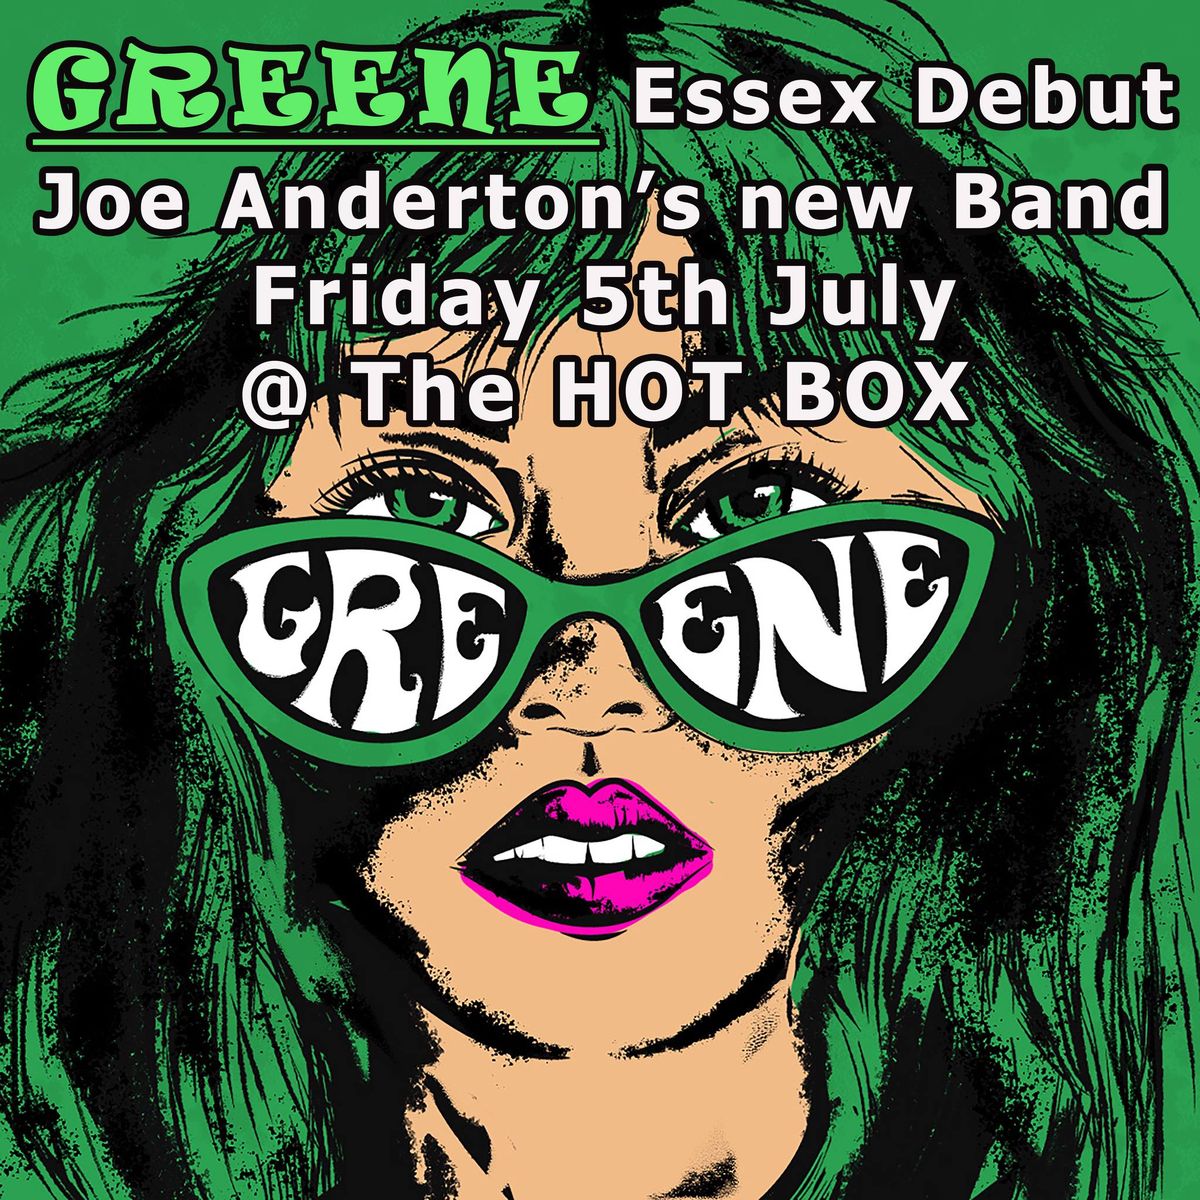 Greene (Joe Anderton's new band Essex debut)